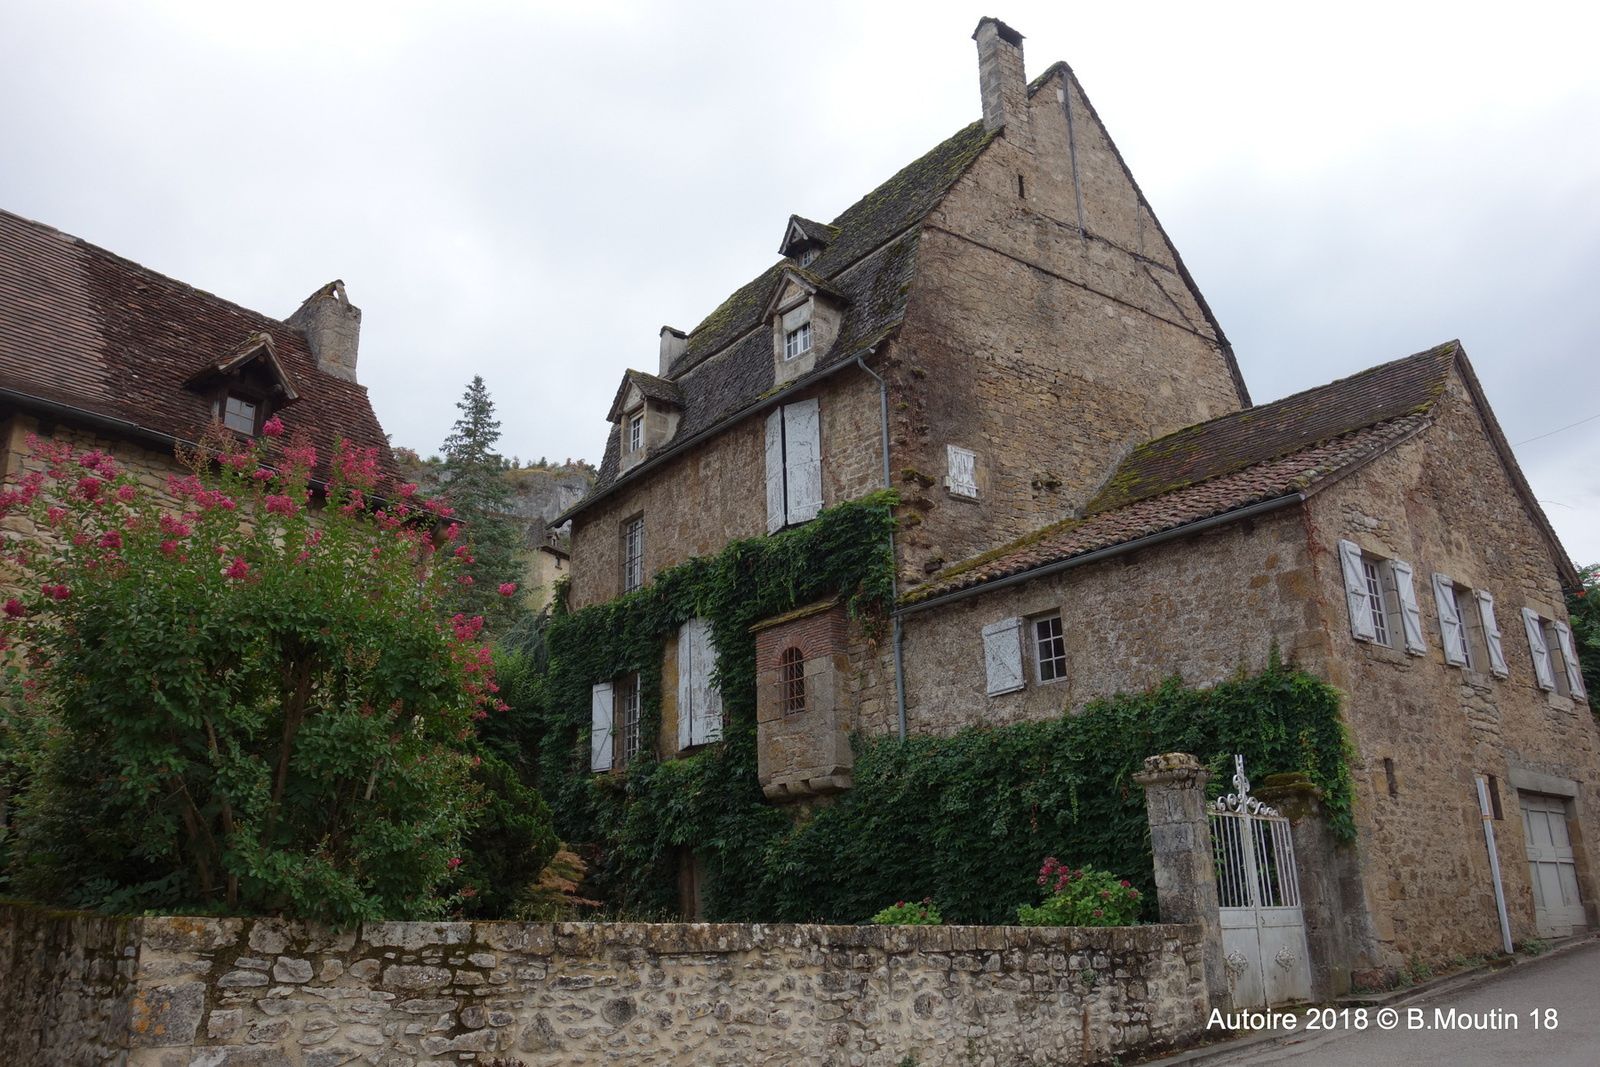 Autoire (un des plus beaux villages de France, dans le Lot)